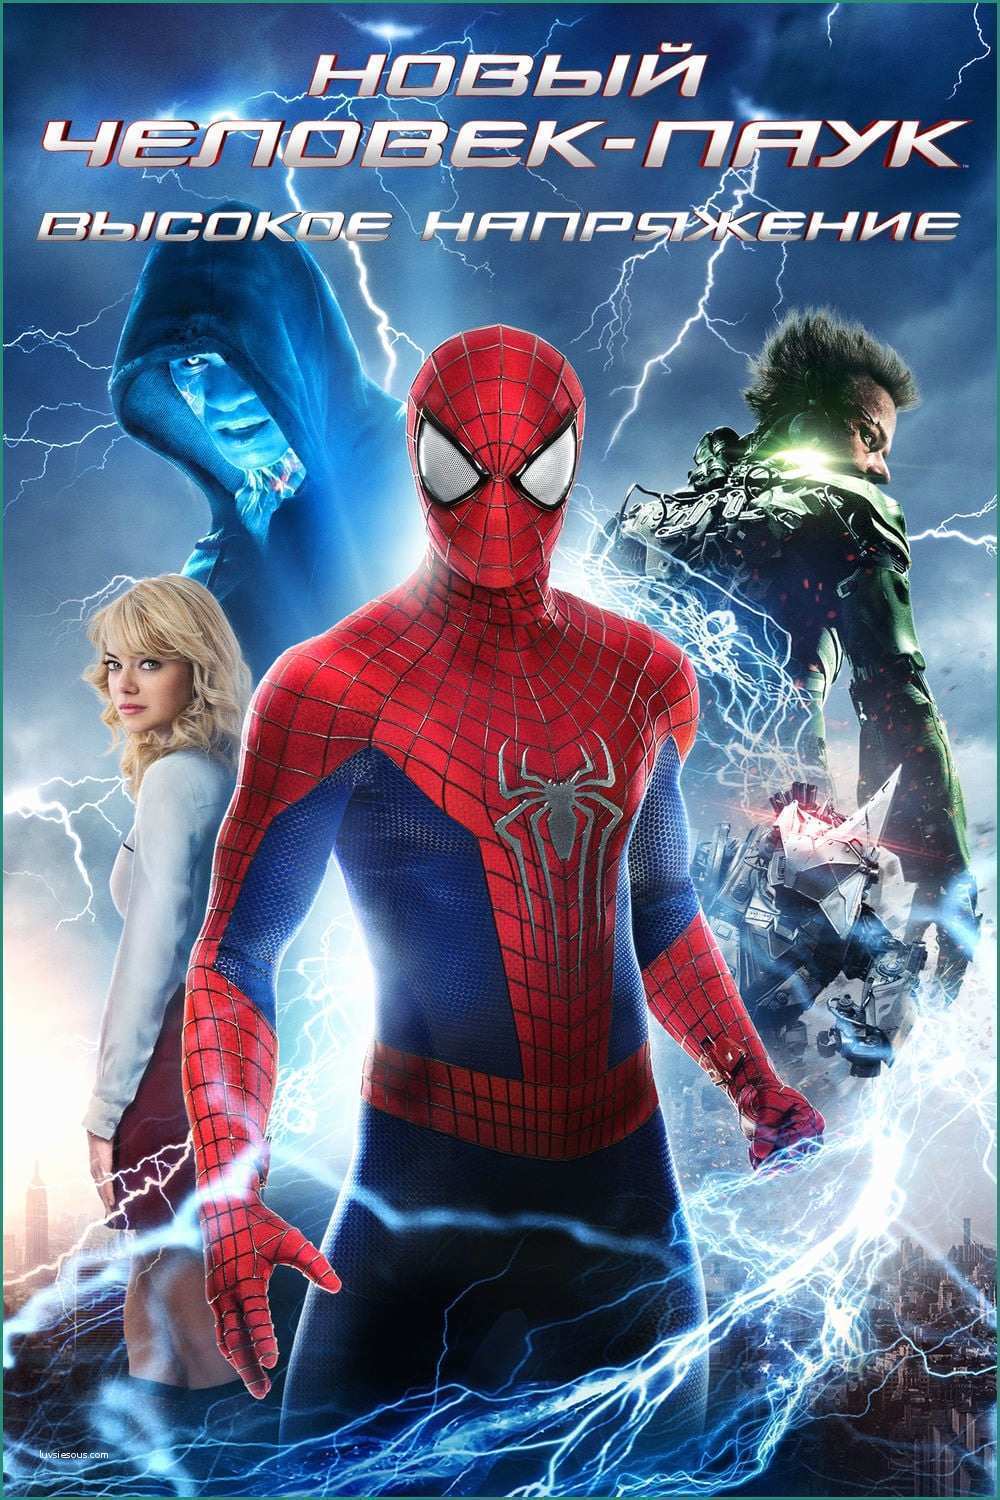 Spider Man Film Completo Italiano E the Amazing Spider Man 2 Il Potere Di Electro Streaming